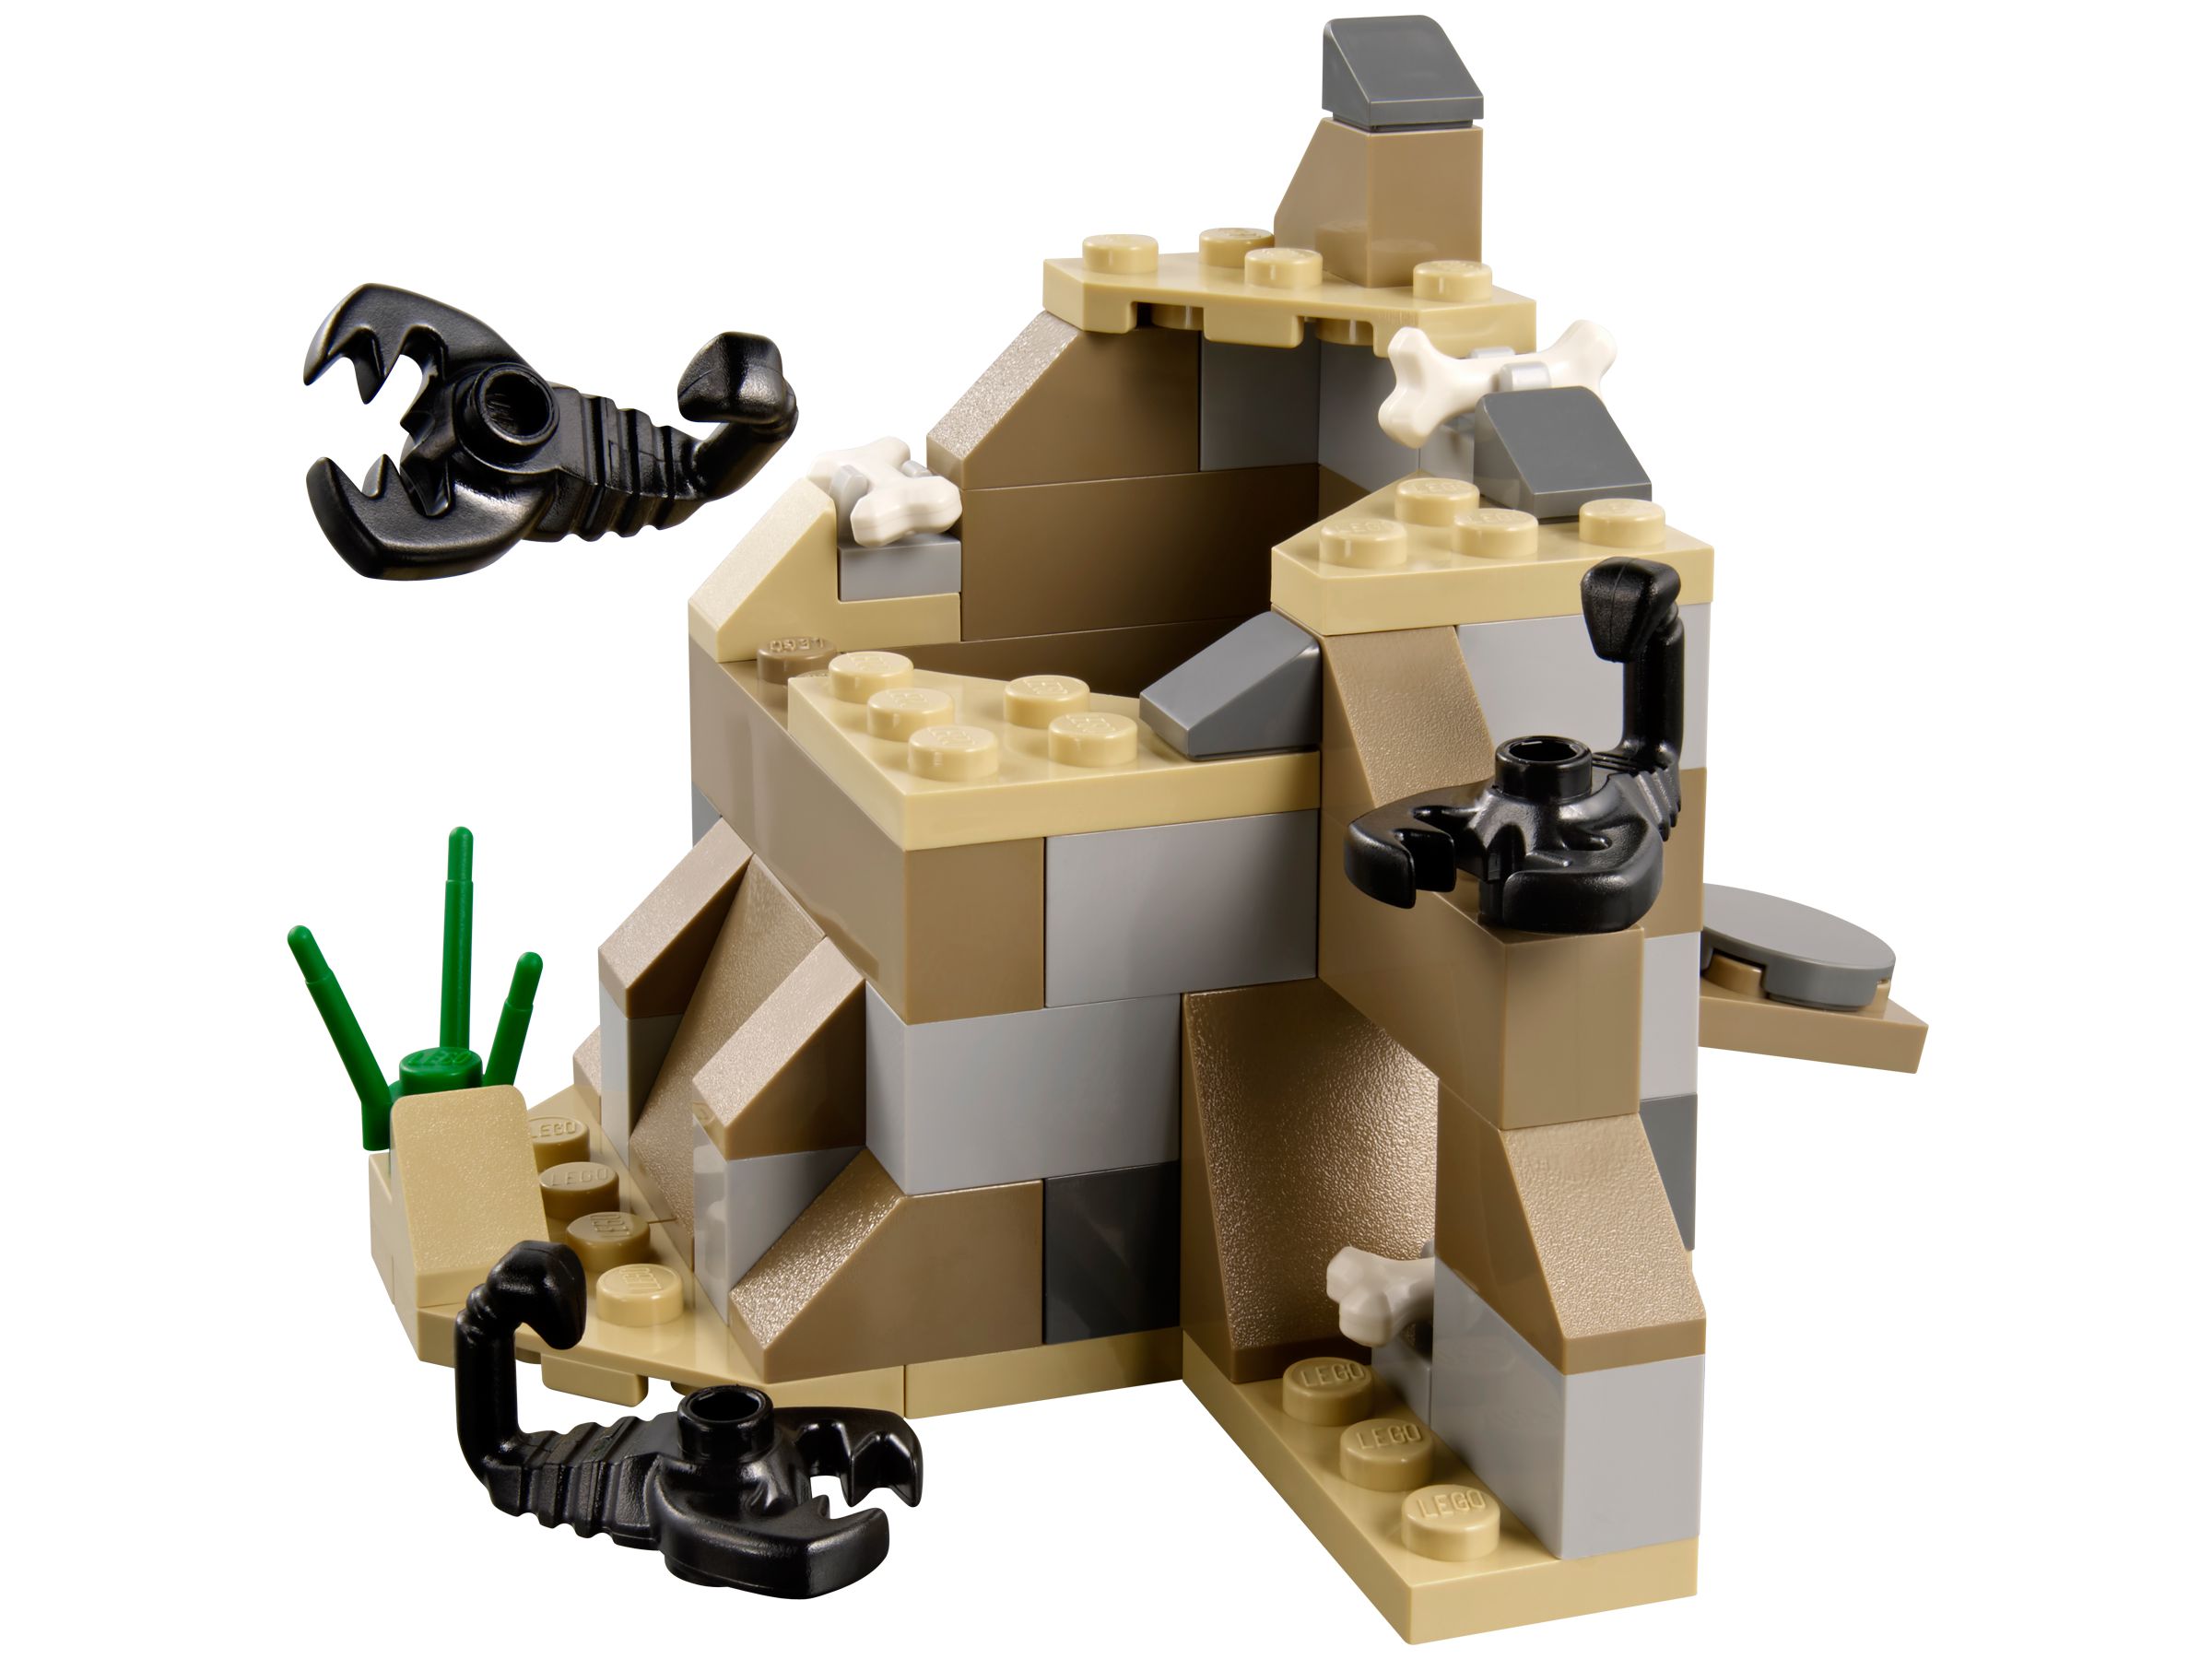 LEGO Lone Ranger 79107 Lager der Comanchen LEGO_79107_alt3.jpg